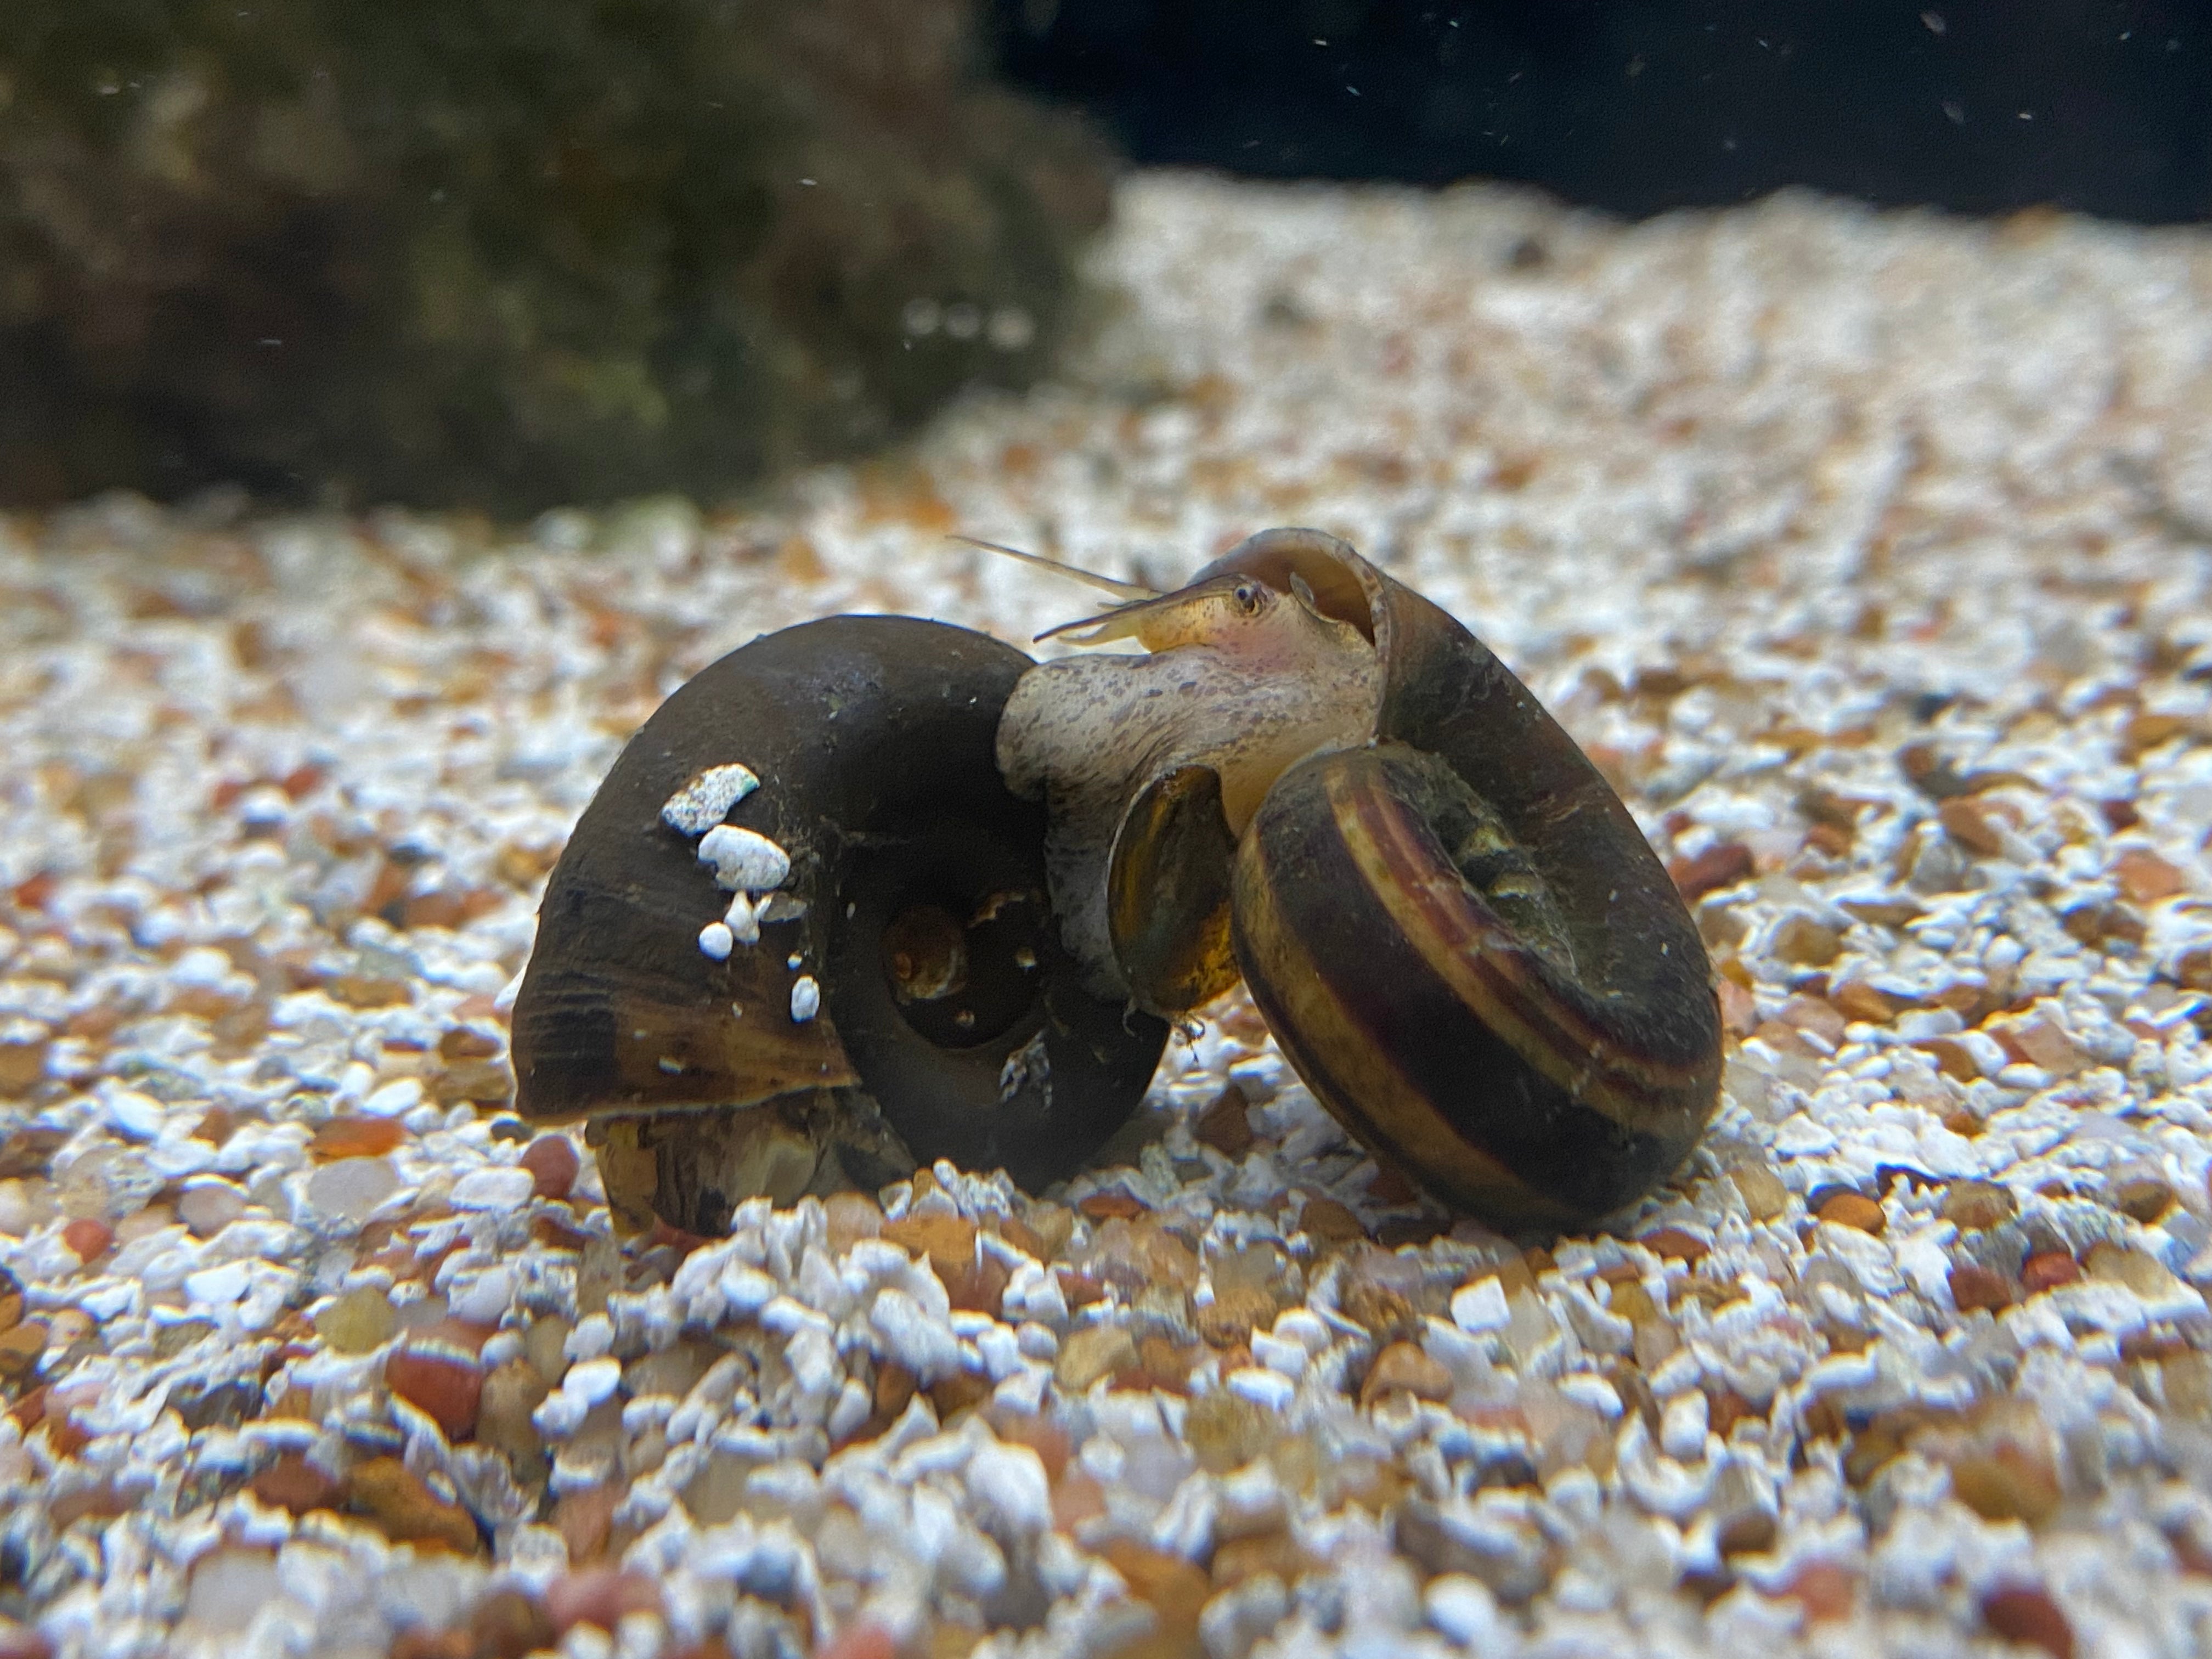 Giant Ramshorn Snail